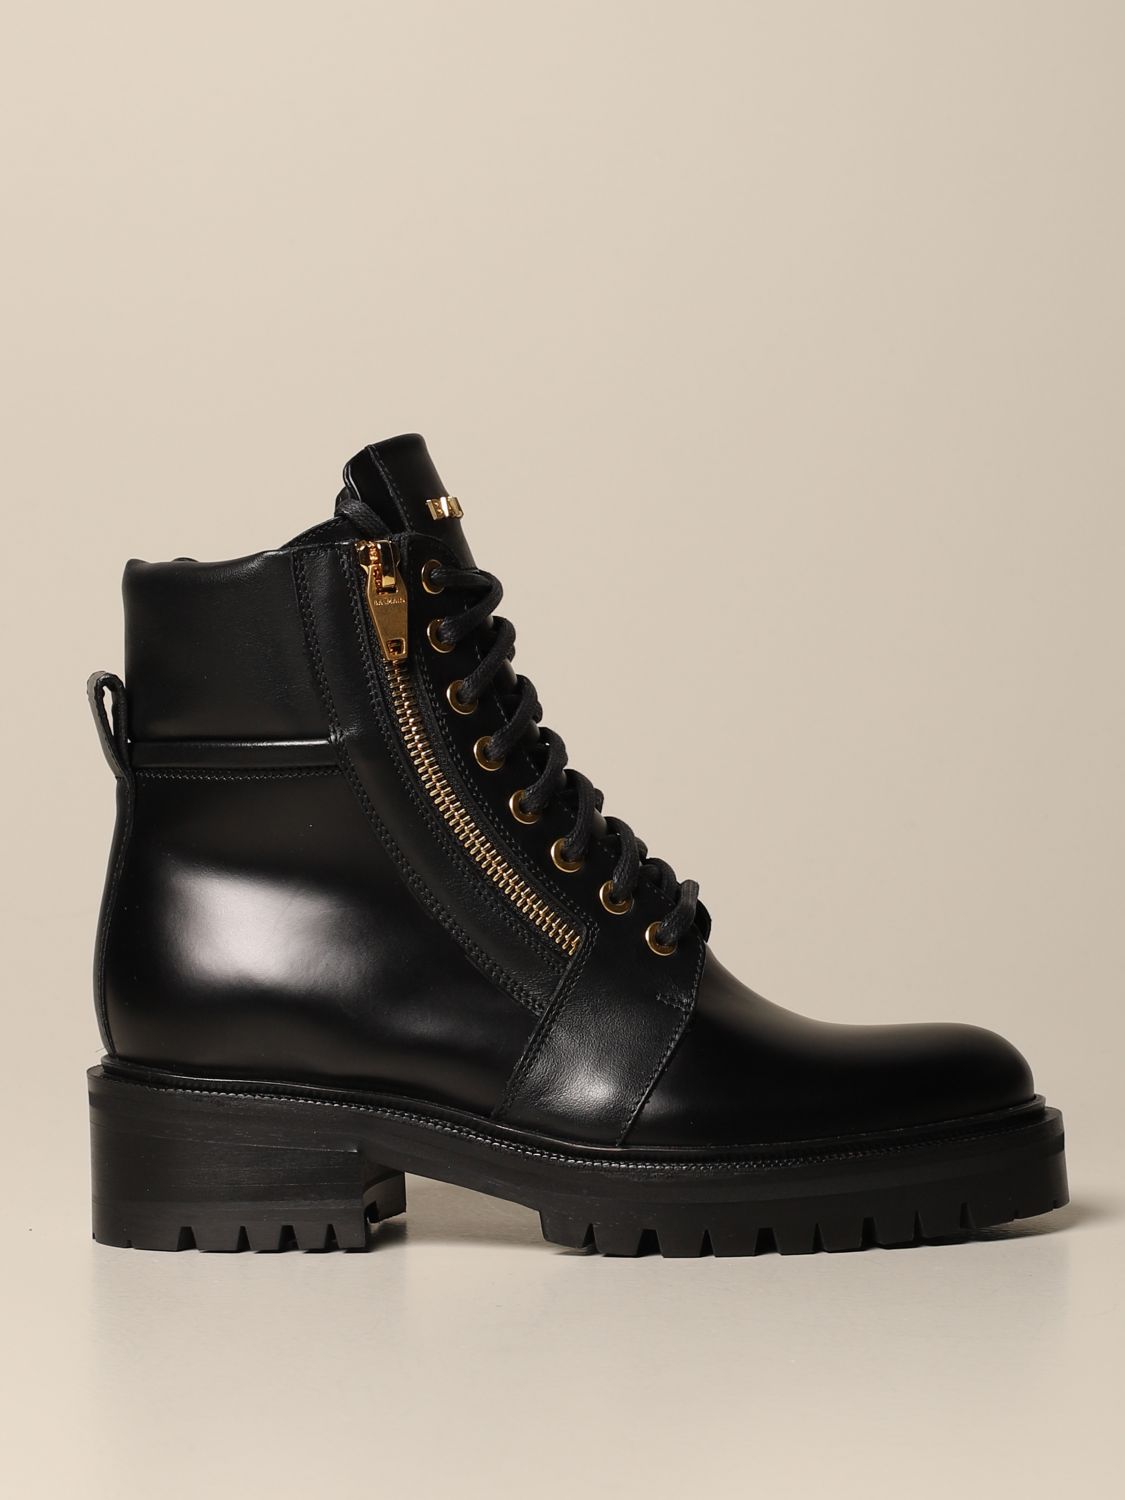 flat black boots womens uk